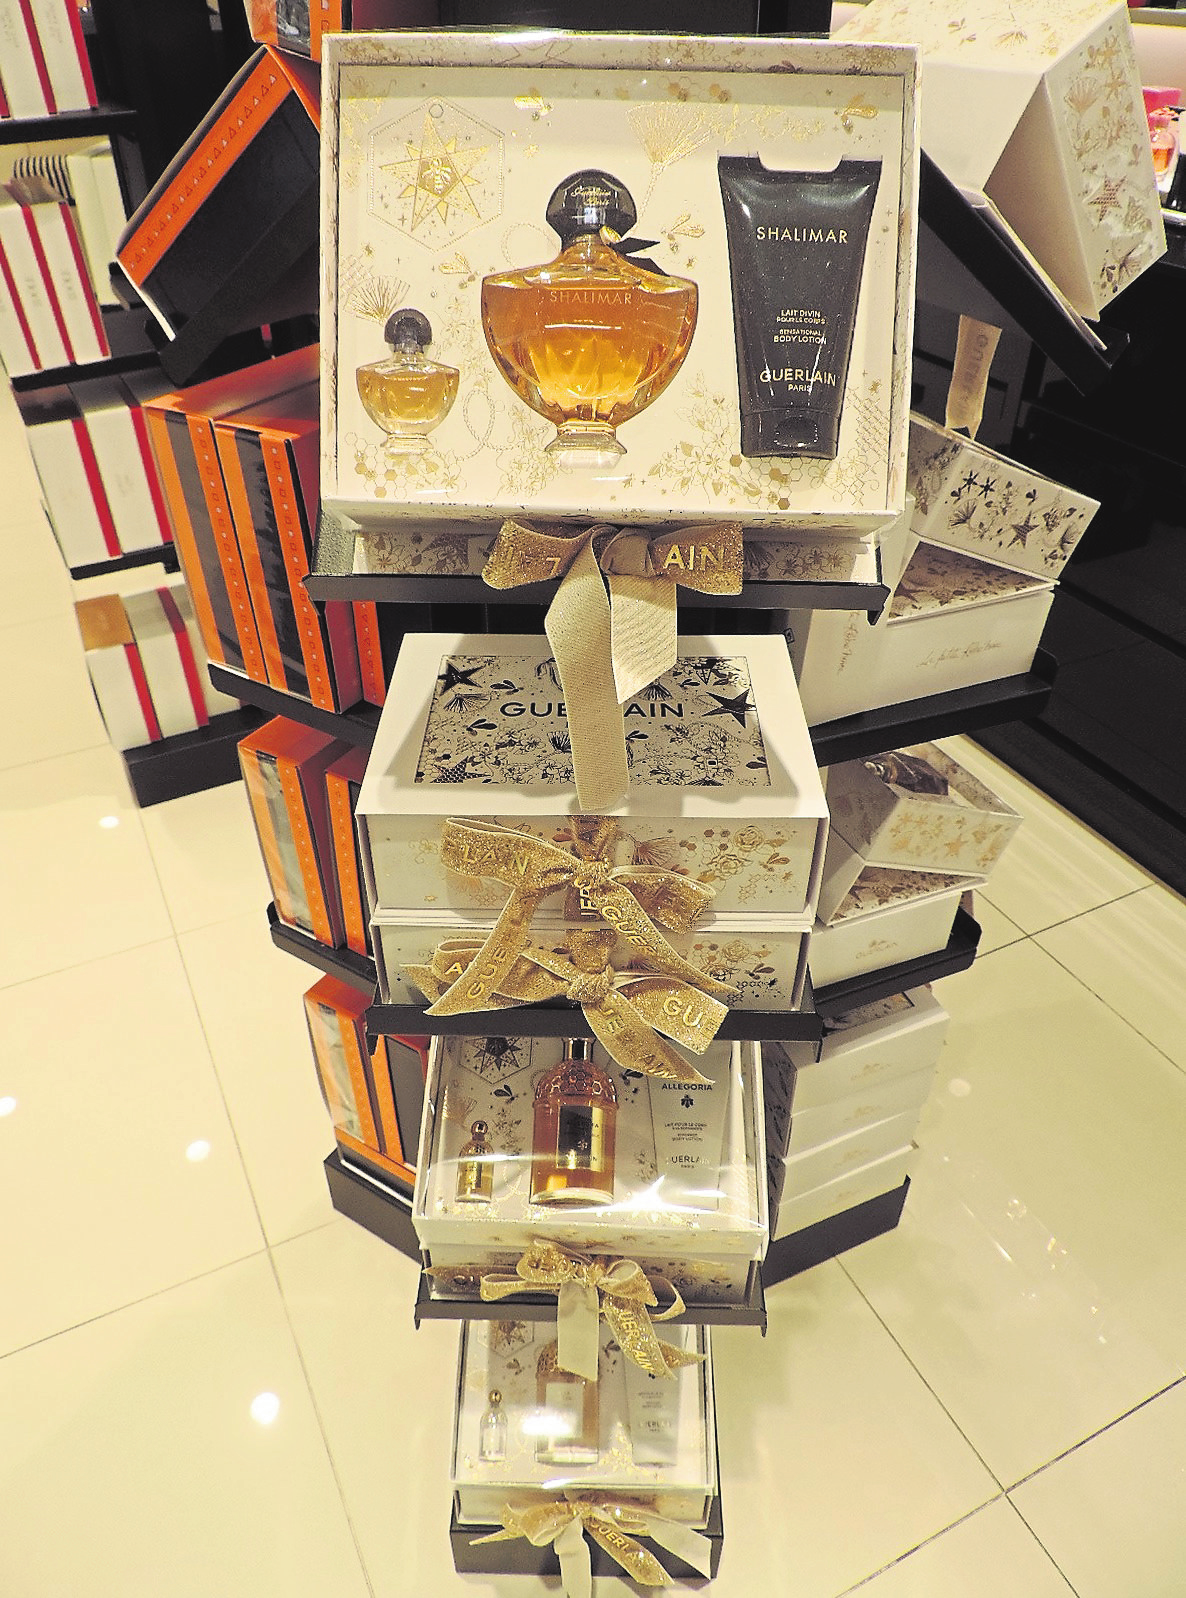 Plus qu'une simple fragrance parmi tant d'autres, Shalimar est littéralement devenu une icône dans l'histoire et le monde de la parfumerie.